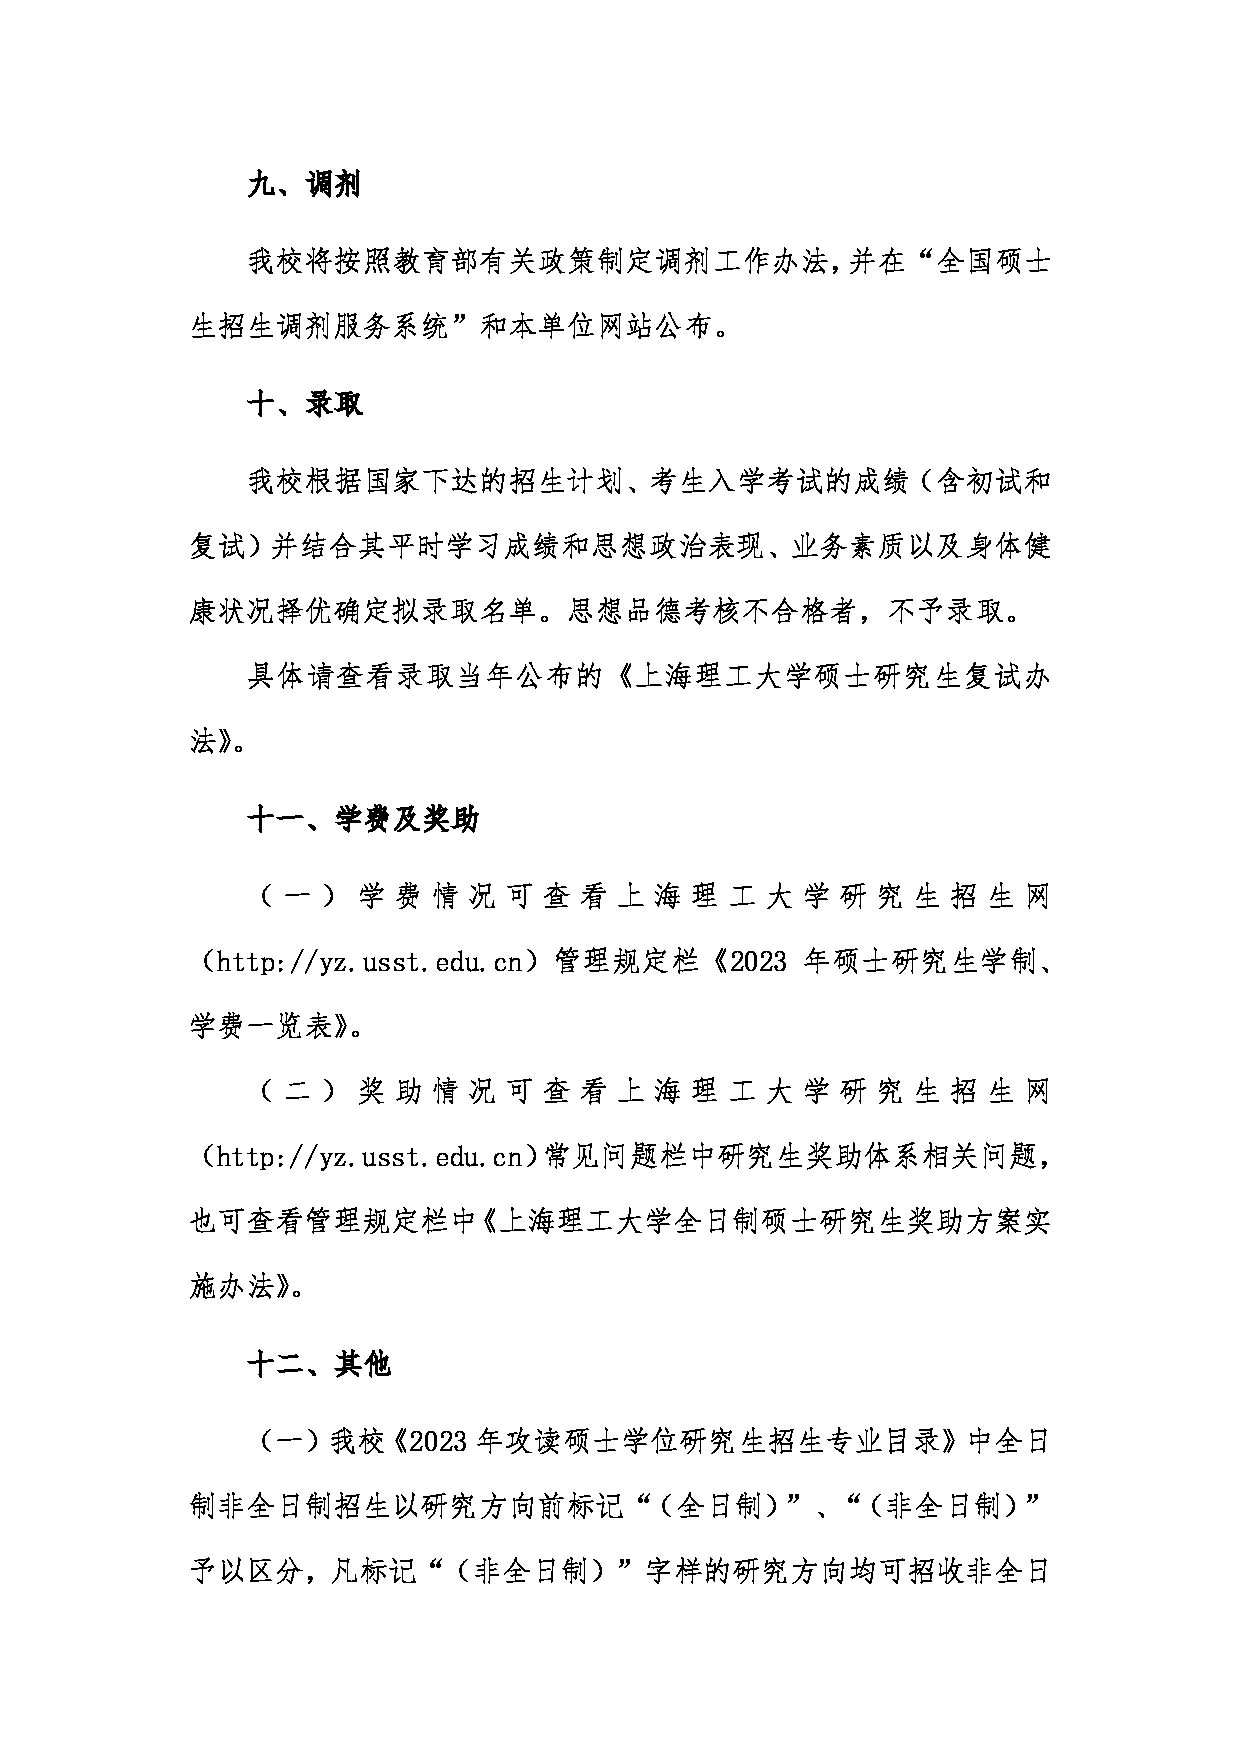 2023招生简章：上海理工大学2023年攻读硕士学位研究生招生简章第9页